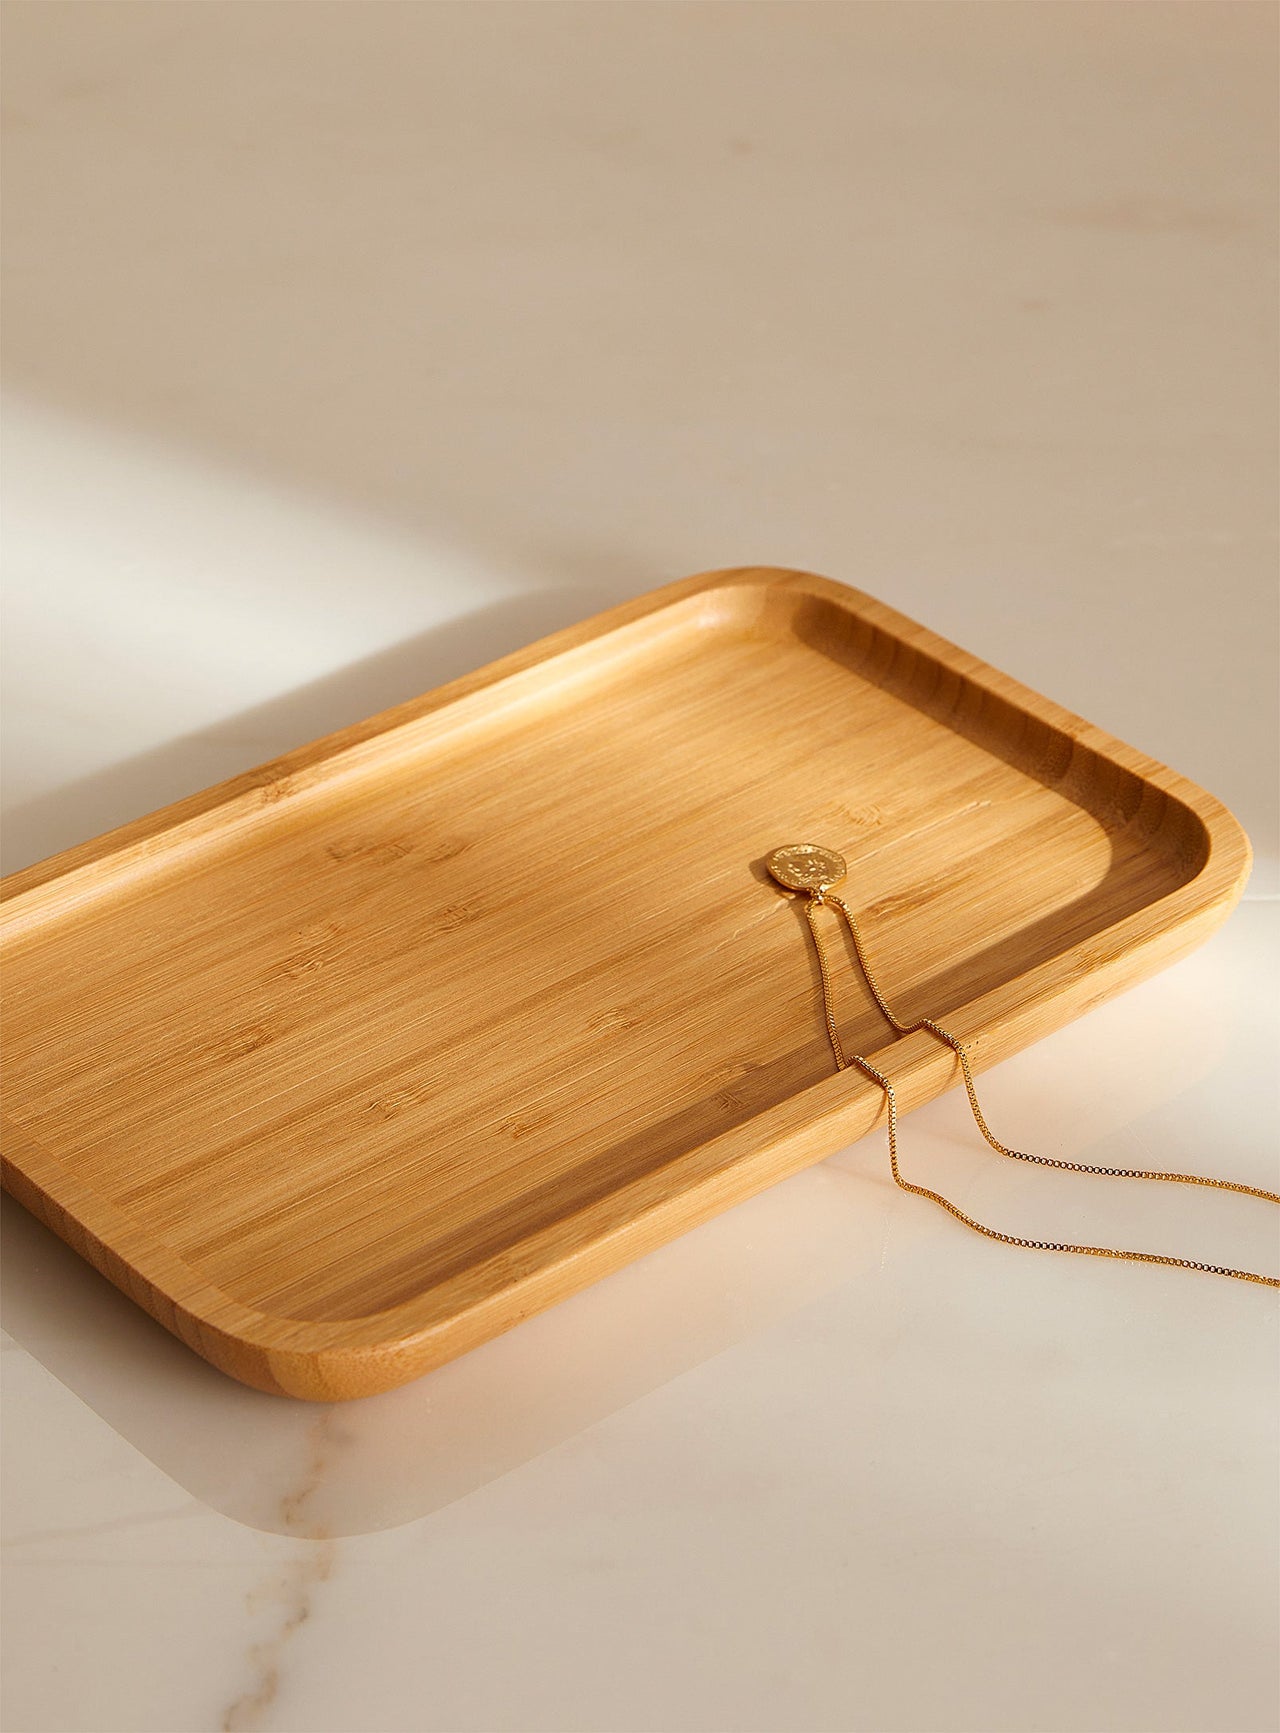 Bamboo tray